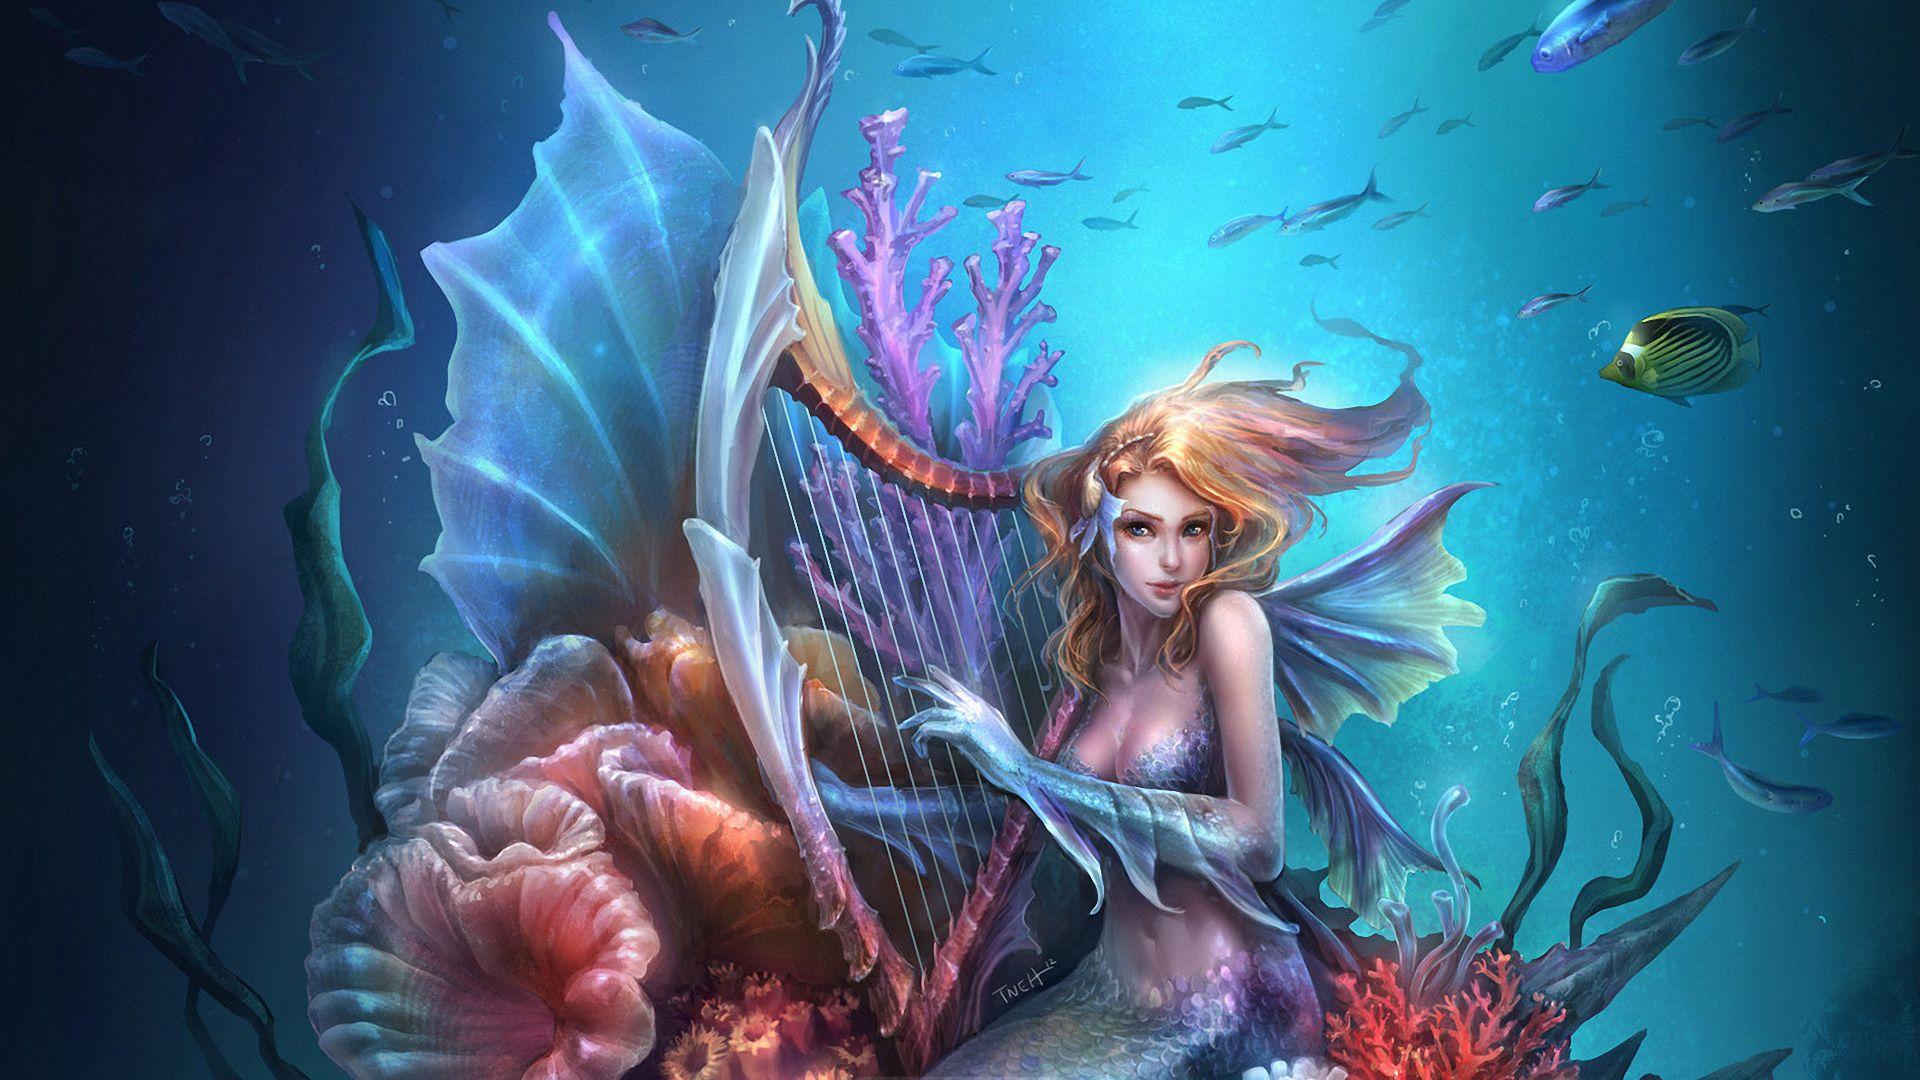 mermaids artwork. Fantasy mermaid art wallpaperx1080